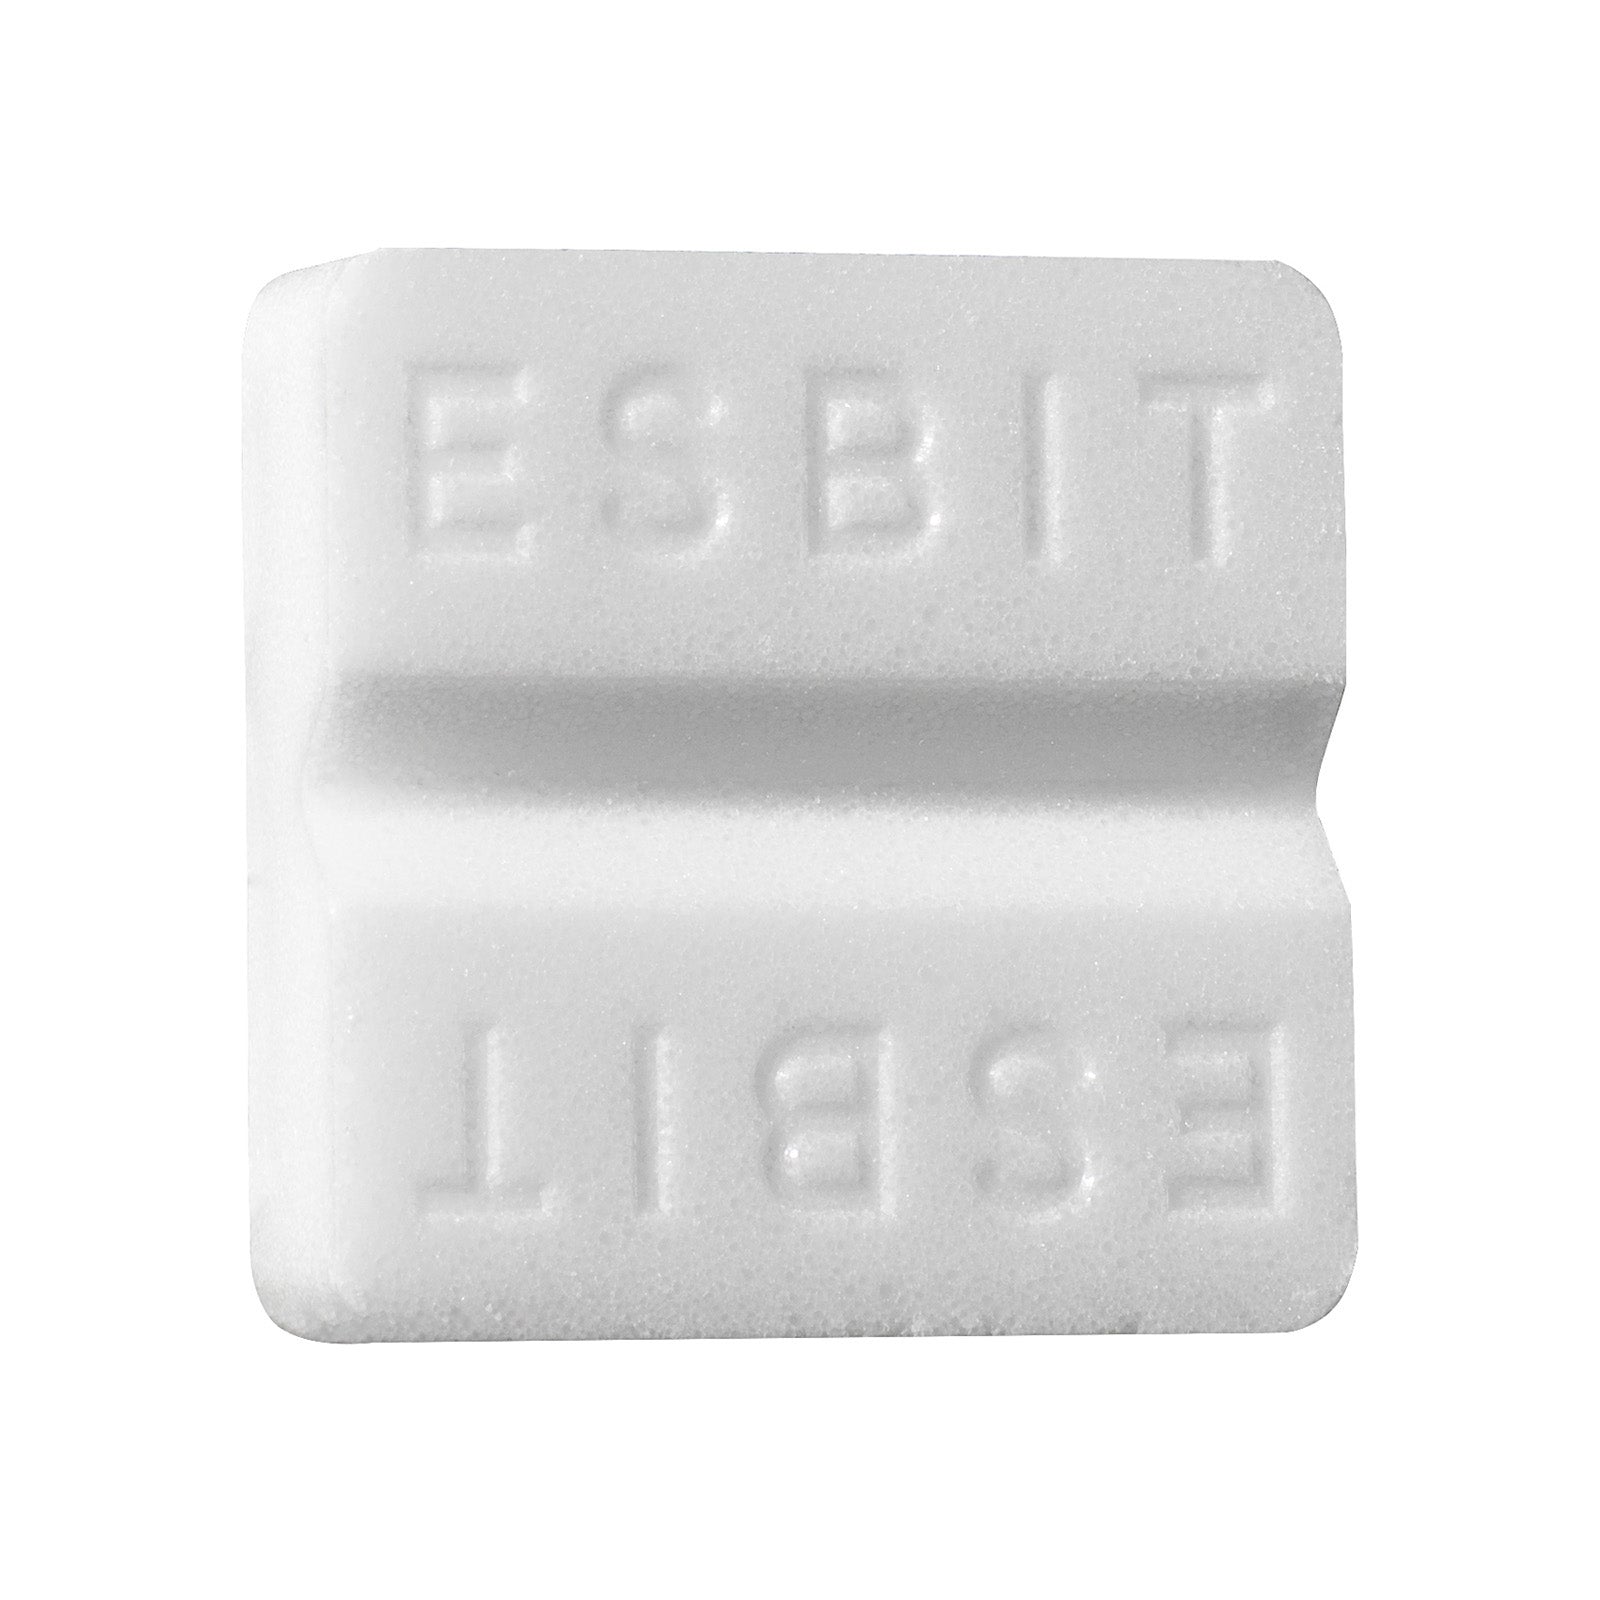 Esbit Trockenbrennstoff-Tabletten 8x27g Tablette